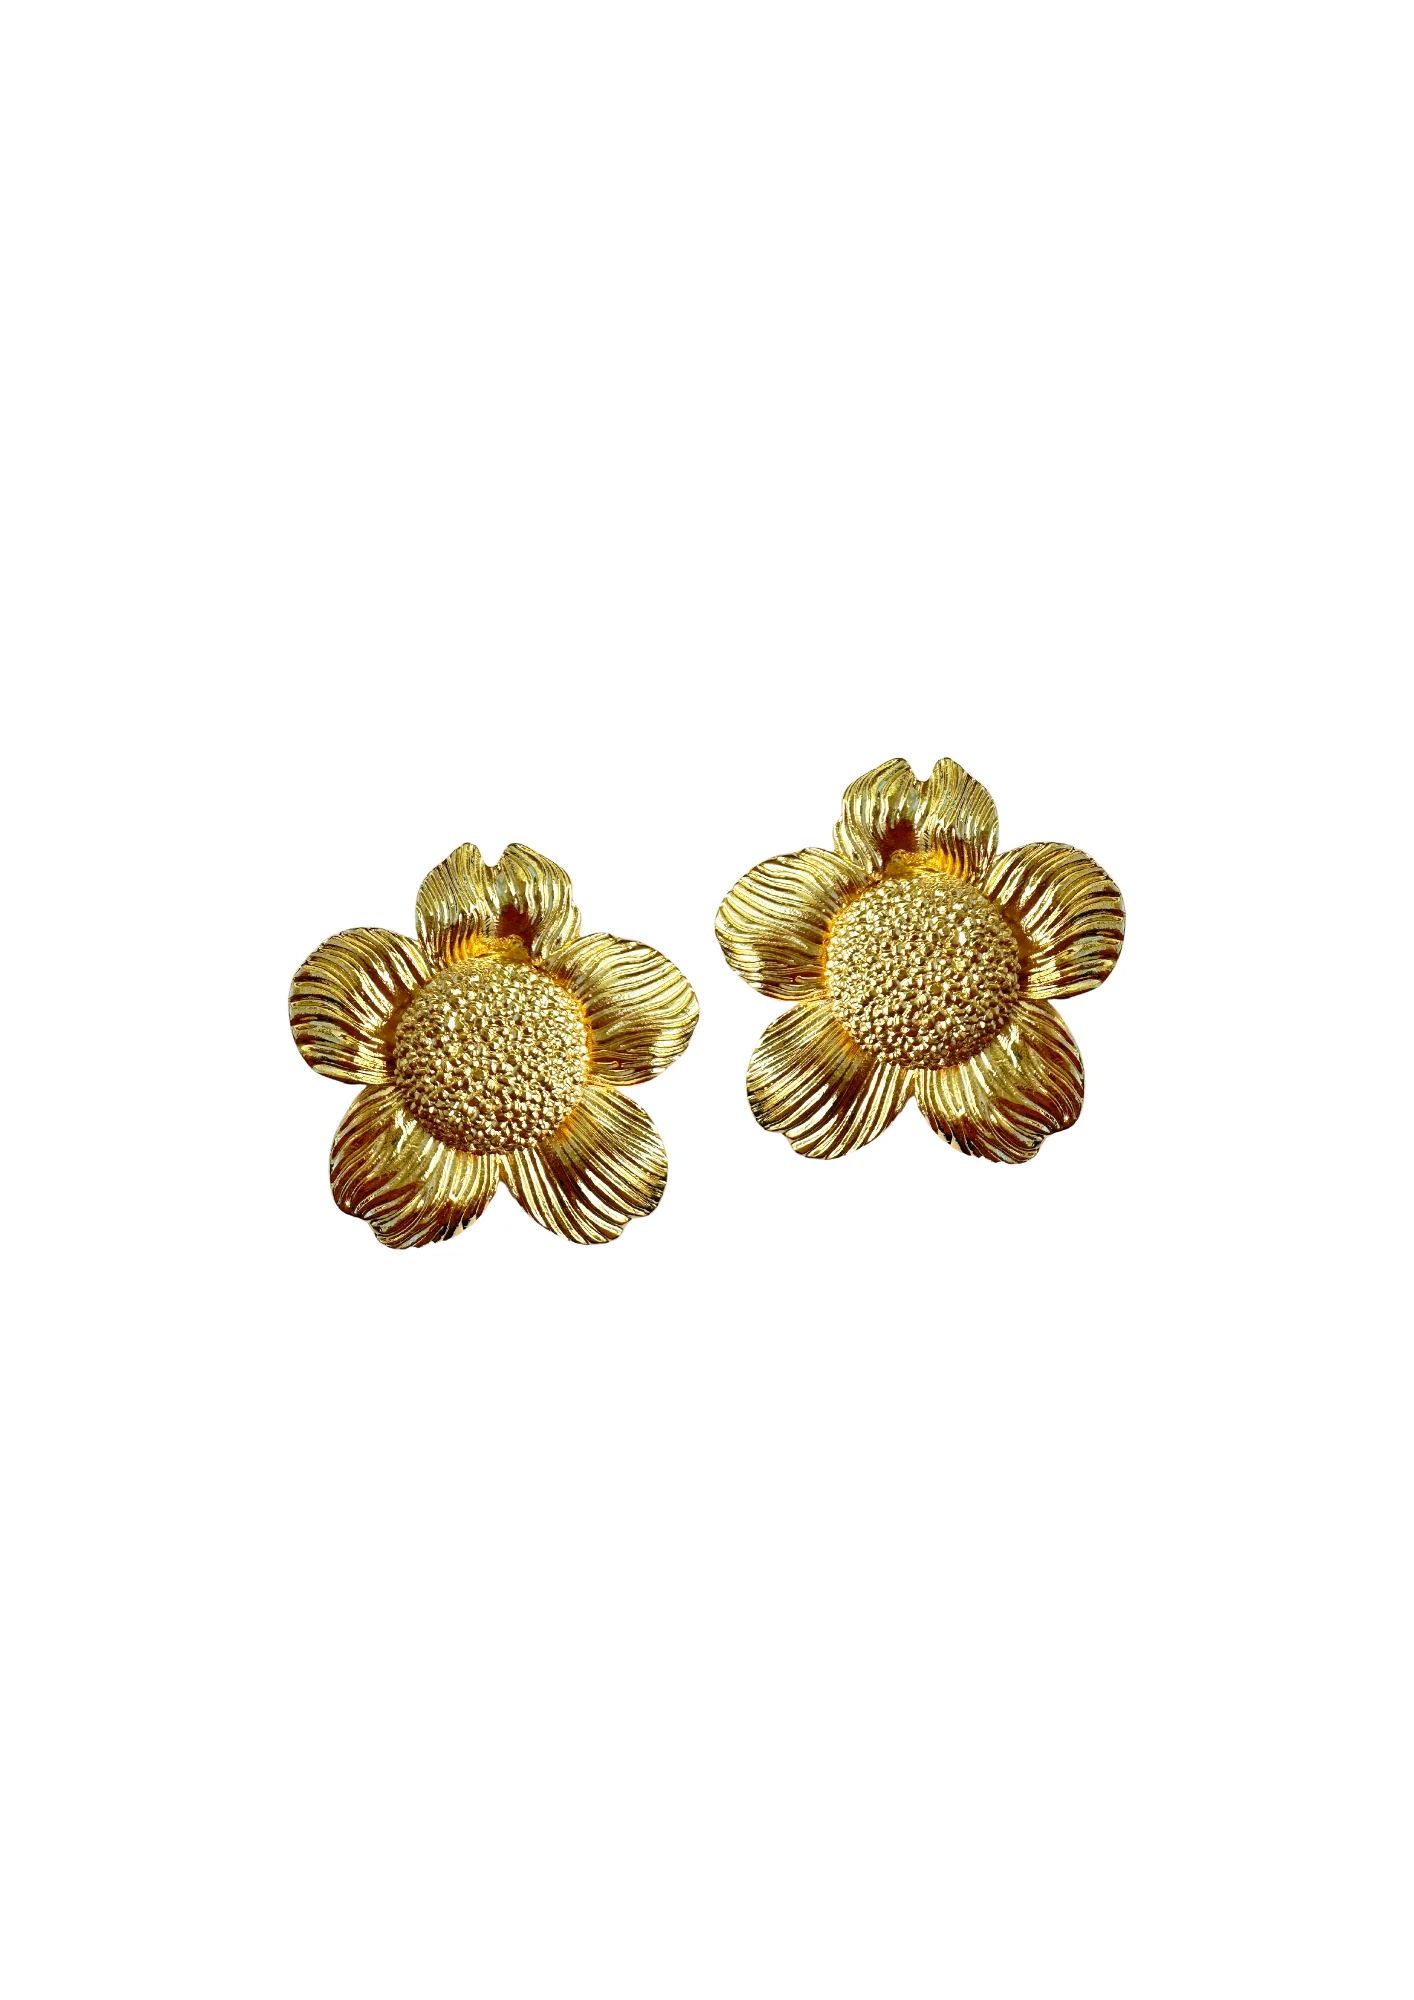 Golden Dogwood Flower Earrings | Nicola Bathie Jewelry